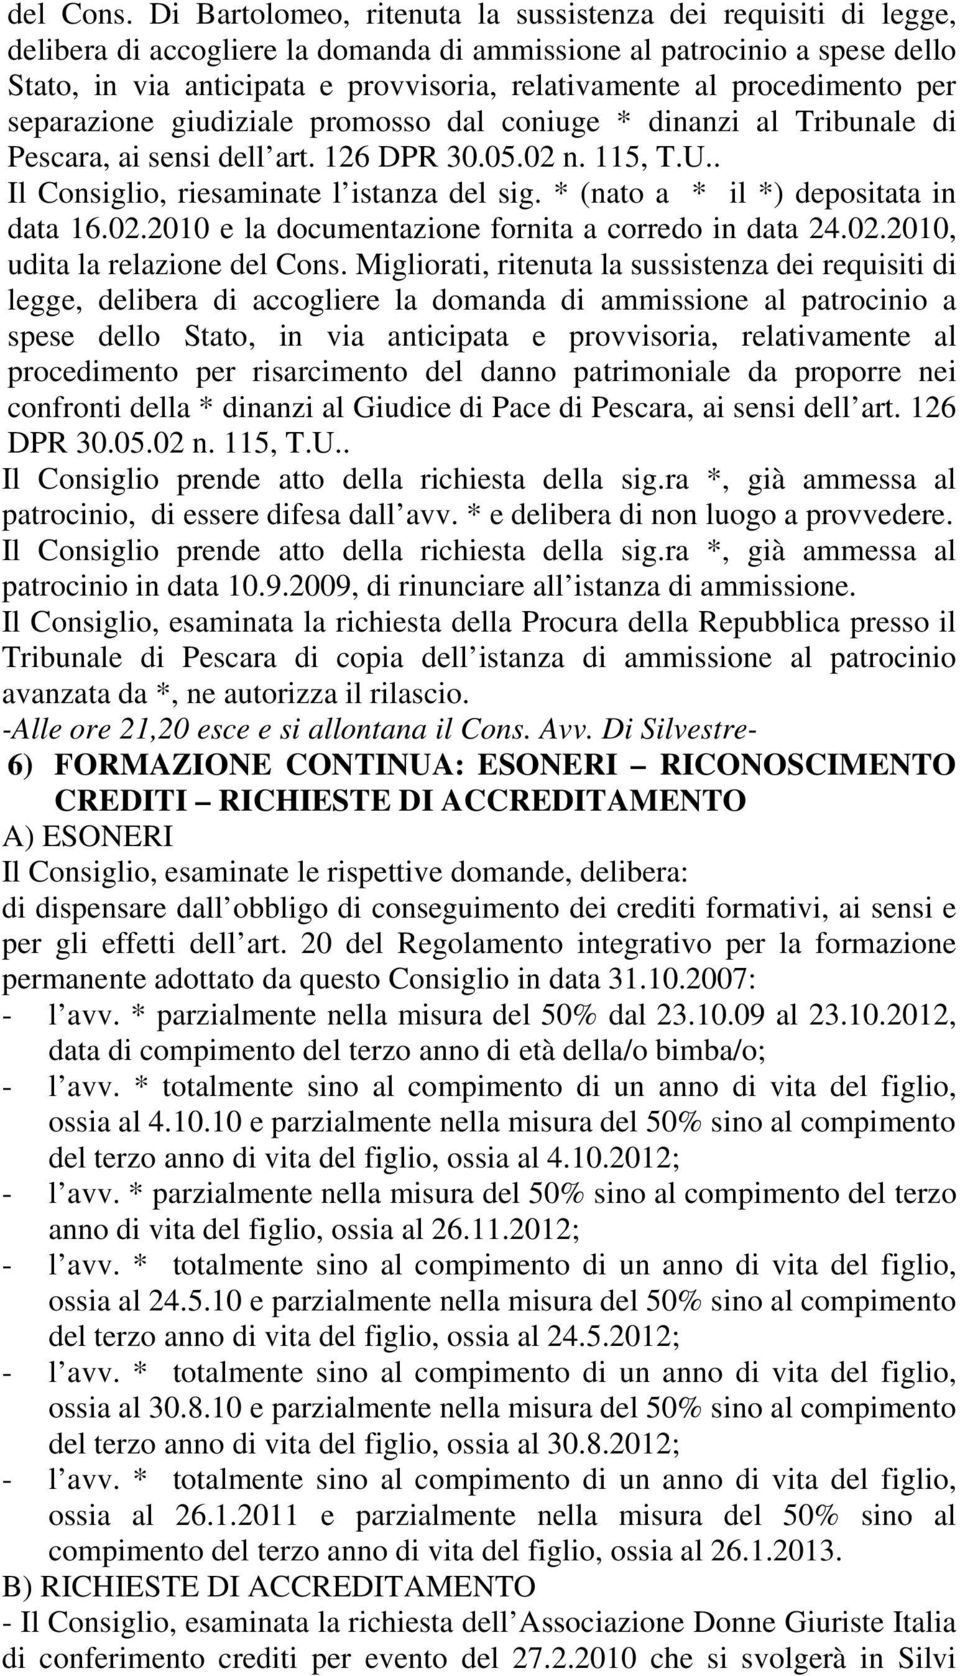 procedimento per separazione giudiziale promosso dal coniuge * dinanzi al Tribunale di Pescara, ai sensi dell art. 126 DPR 30.05.02 n. 115, T.U.. Il Consiglio, riesaminate l istanza del sig.